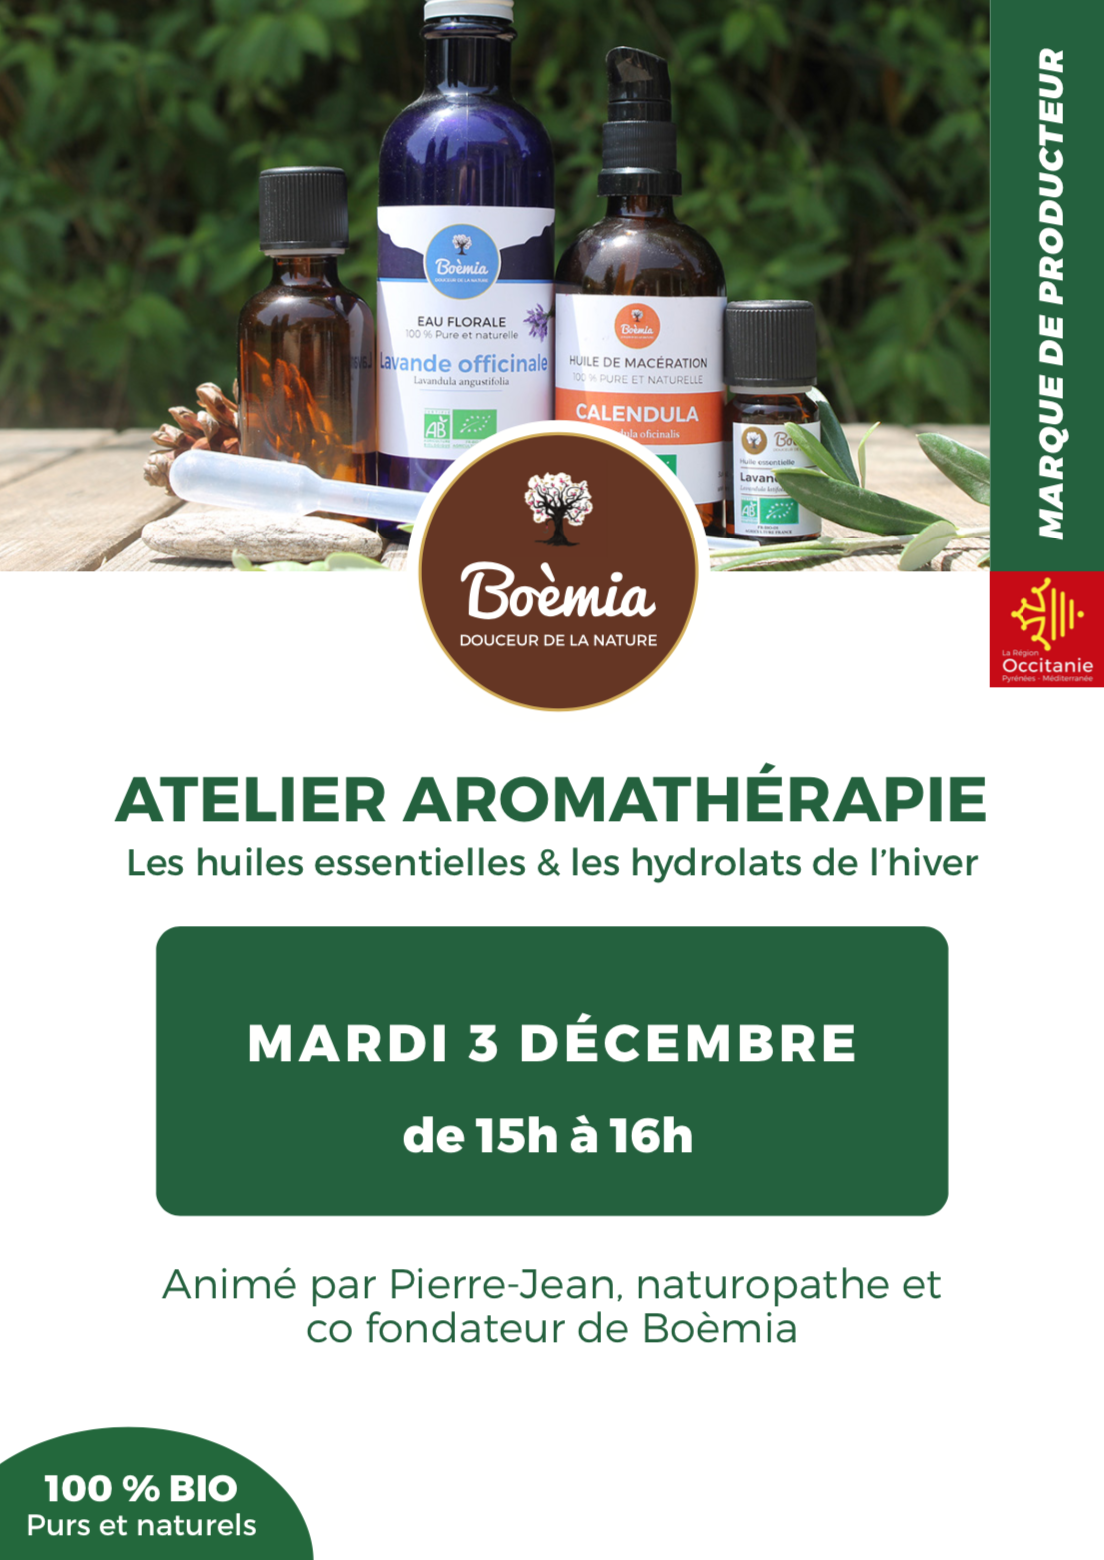 Atelier aromathérapie mardi 3 décembre